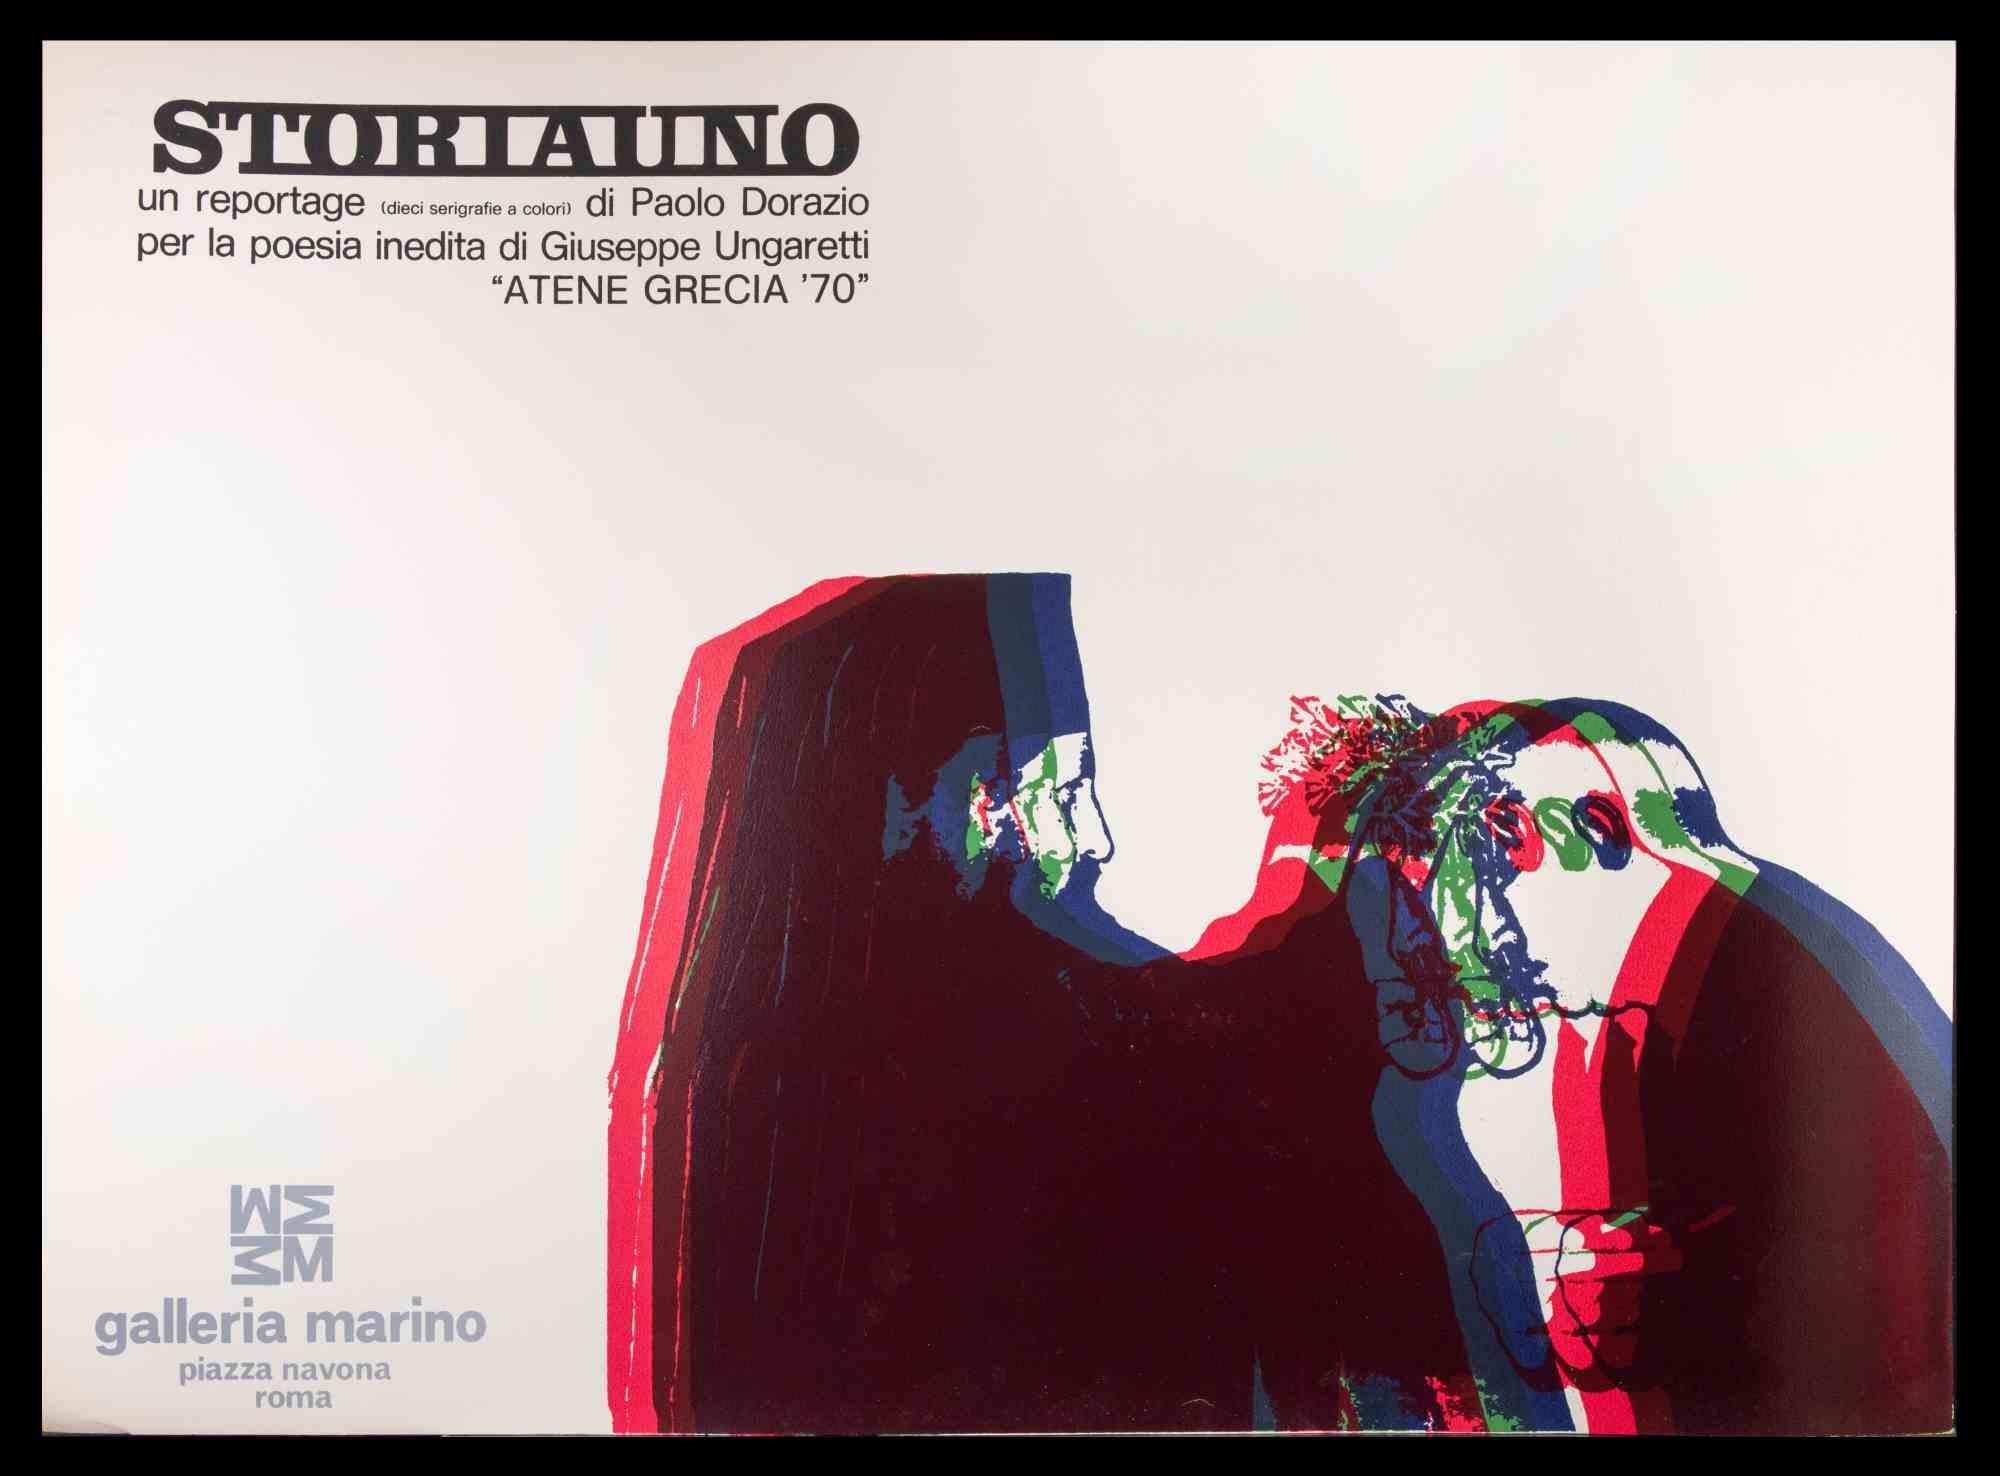 Storiauno For Poem de "Inedita" de Giuseppe Ungaretti est une affiche vintage sur papier réalisée dans les années 1970 par Paolo Dorazio.

L'œuvre a été réalisée à l'occasion de l'exposition qui s'est tenue à la "Marino Gallery" à Rome, en